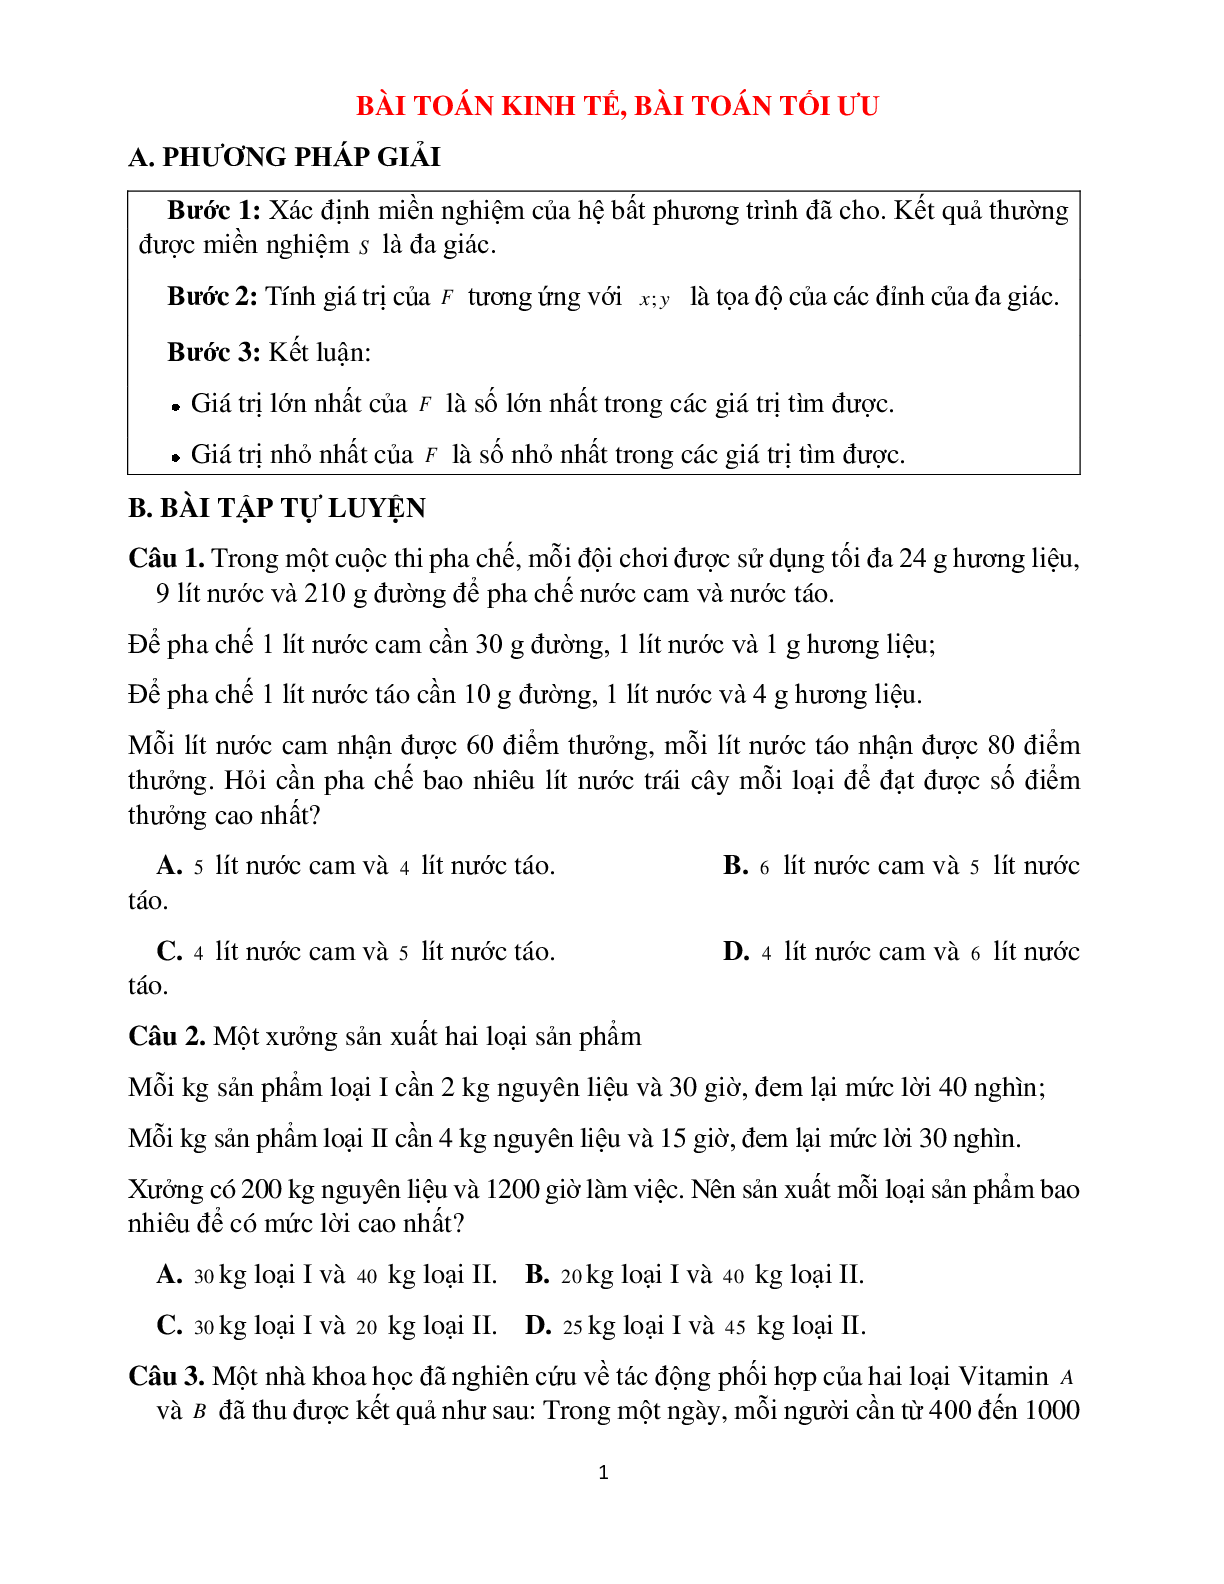 Bài tập bài toán kinh tế, bài toán tối ưu Toán 10 (trang 1)